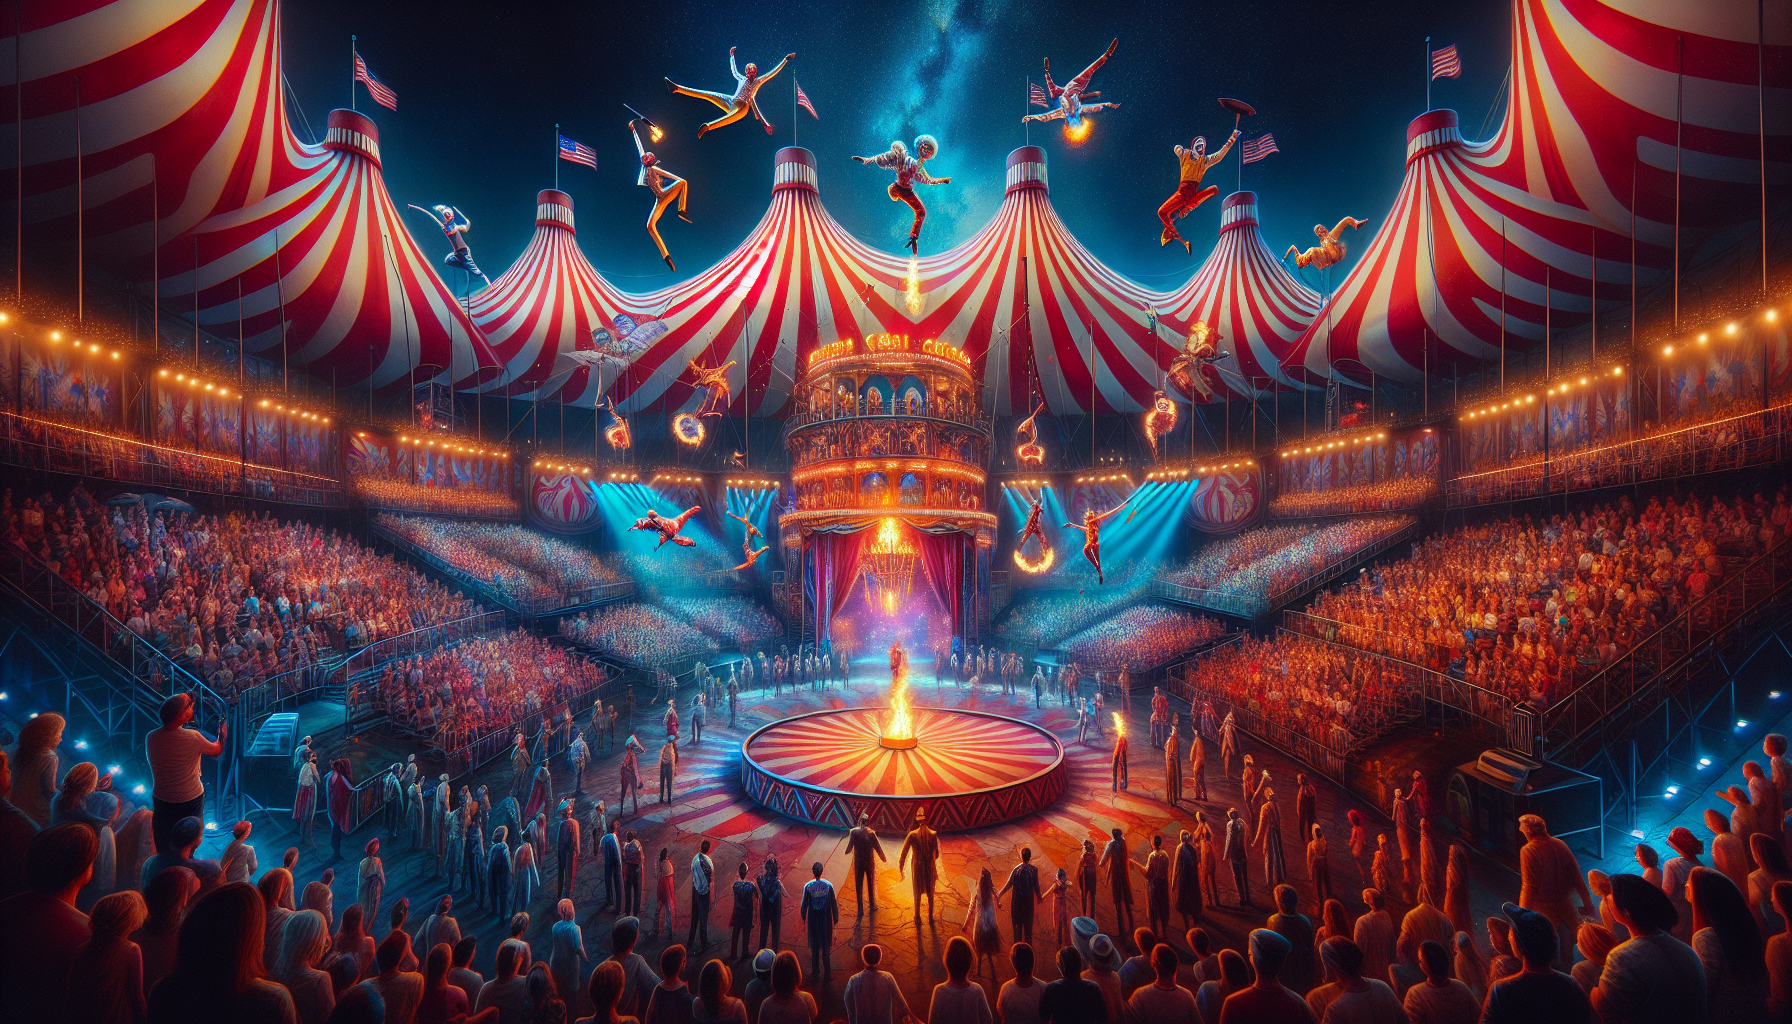 Enjoy the Circus Sarasota: A Spectacular Show in the Heart of Sarasota